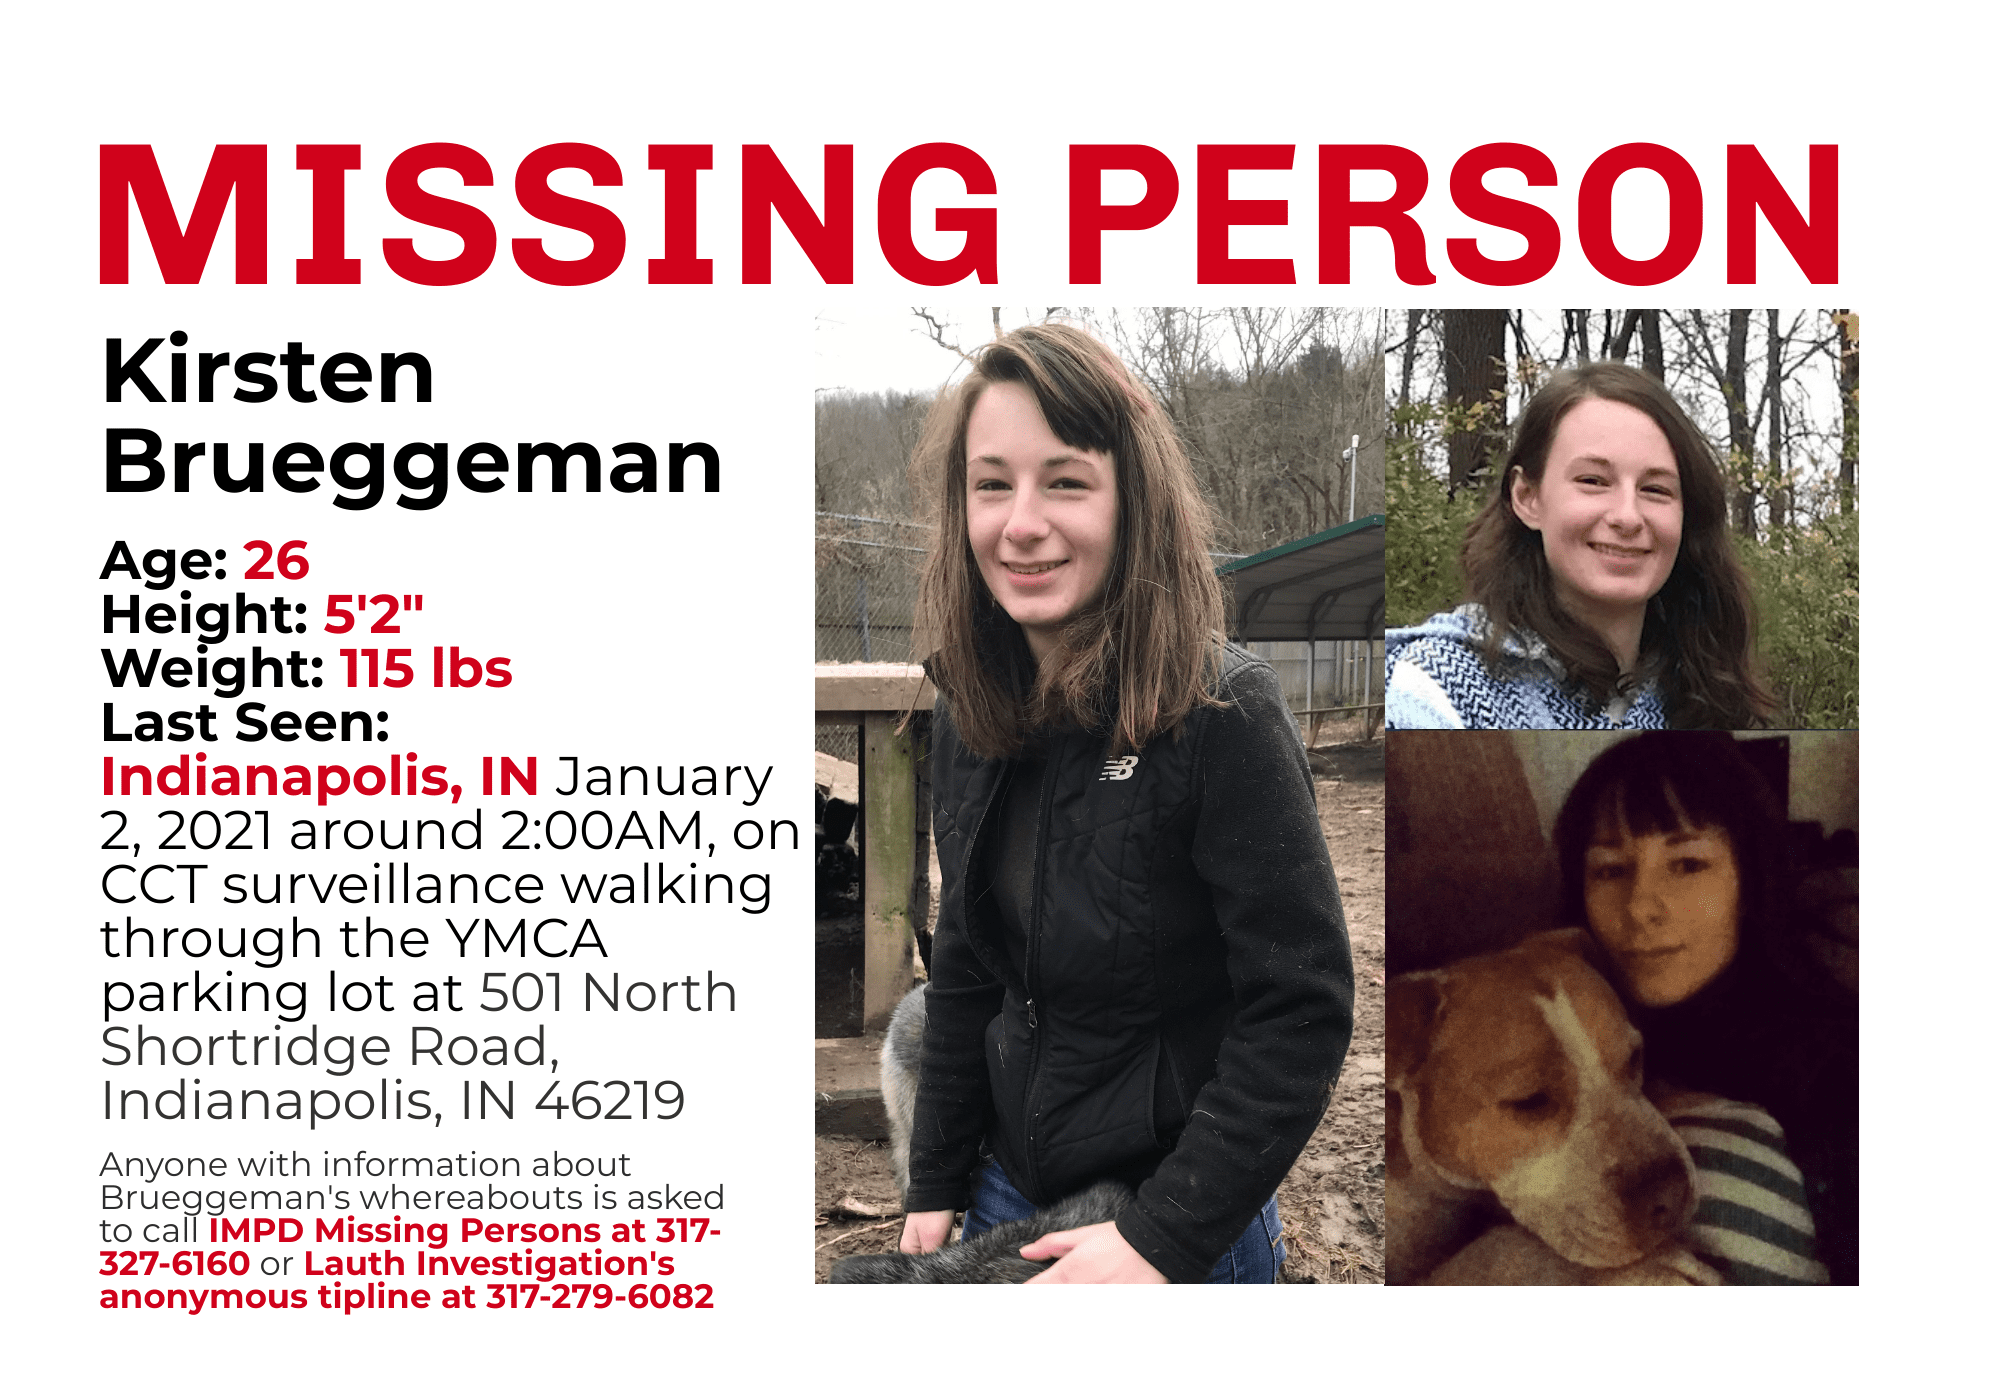 Kirsten Brueggeman still missing, PI joins search for missing woman